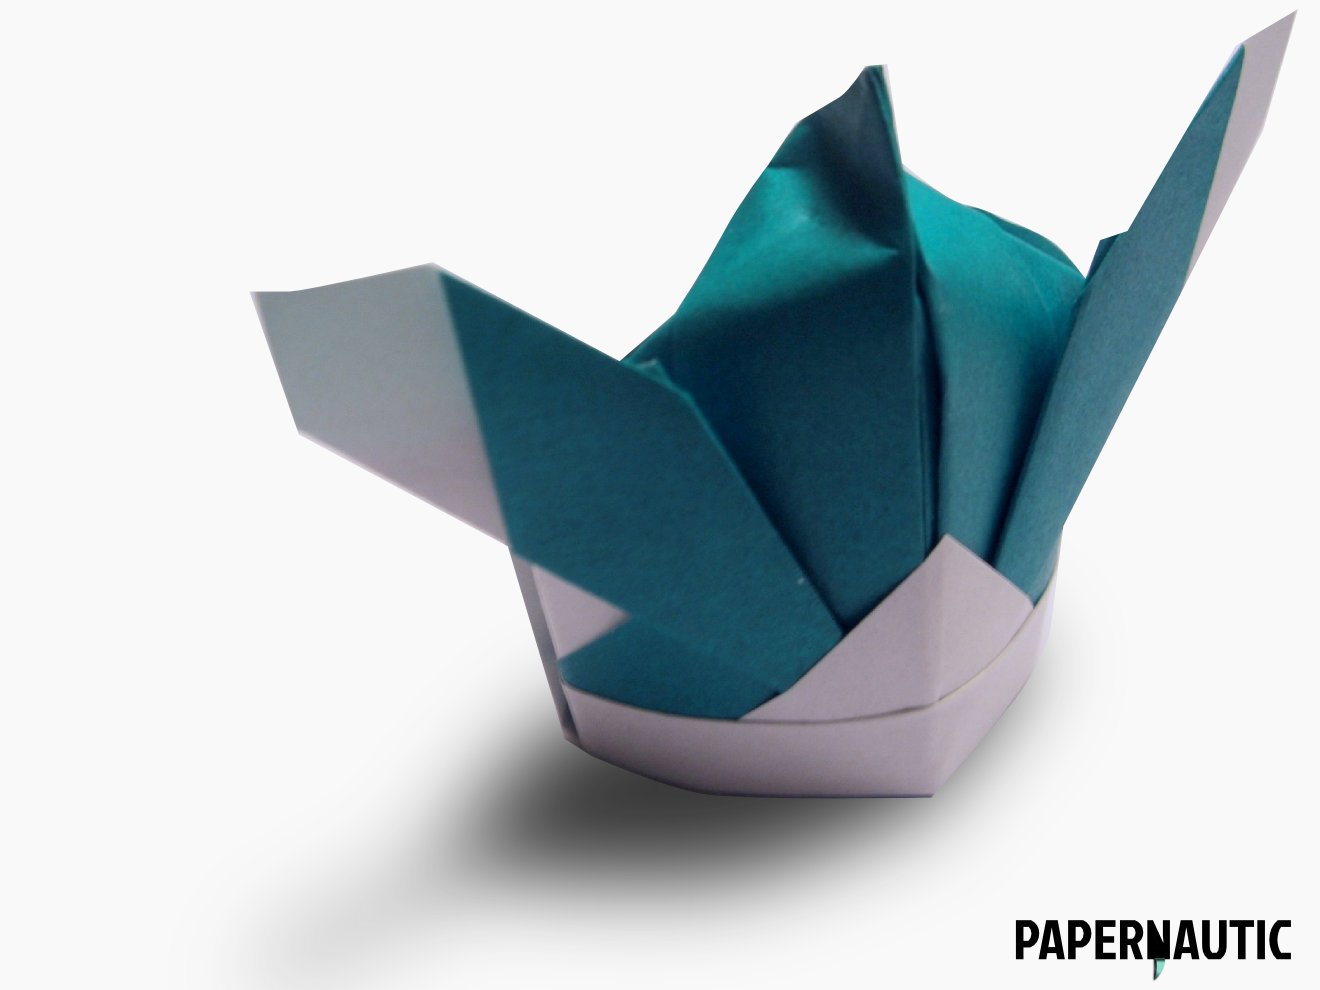 Samurai Hat Origami Design Papernautic